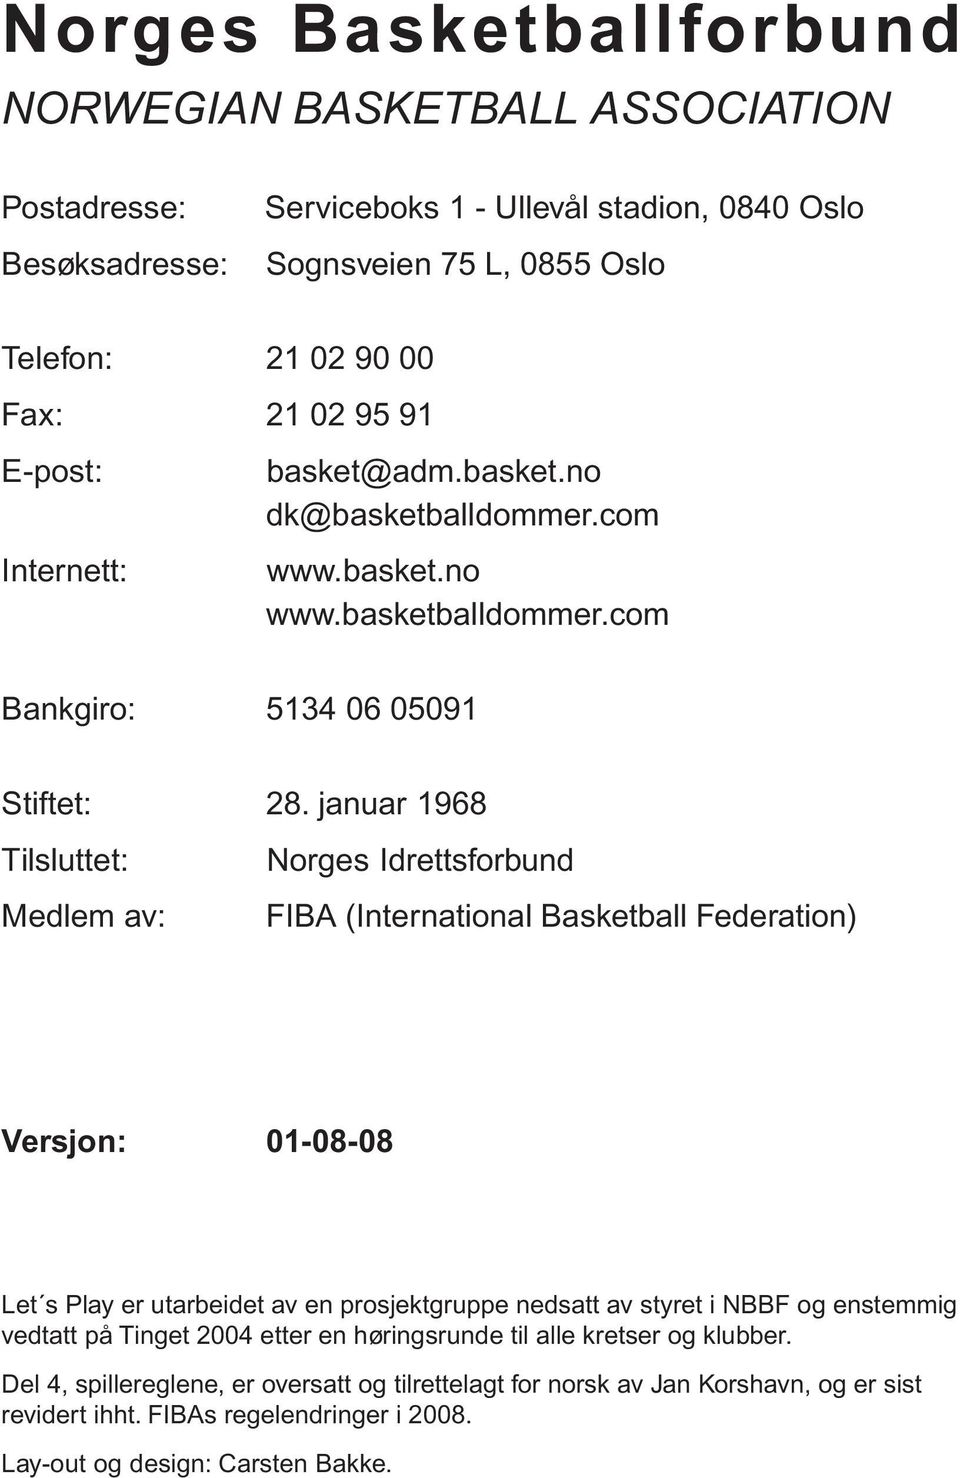 januar 1968 Tilsluttet: Norges Idrettsforbund Medlem av: FIBA (International Basketball Federation) Versjon: 01-08-08 Let s Play er utarbeidet av en prosjektgruppe nedsatt av styret i NBBF og